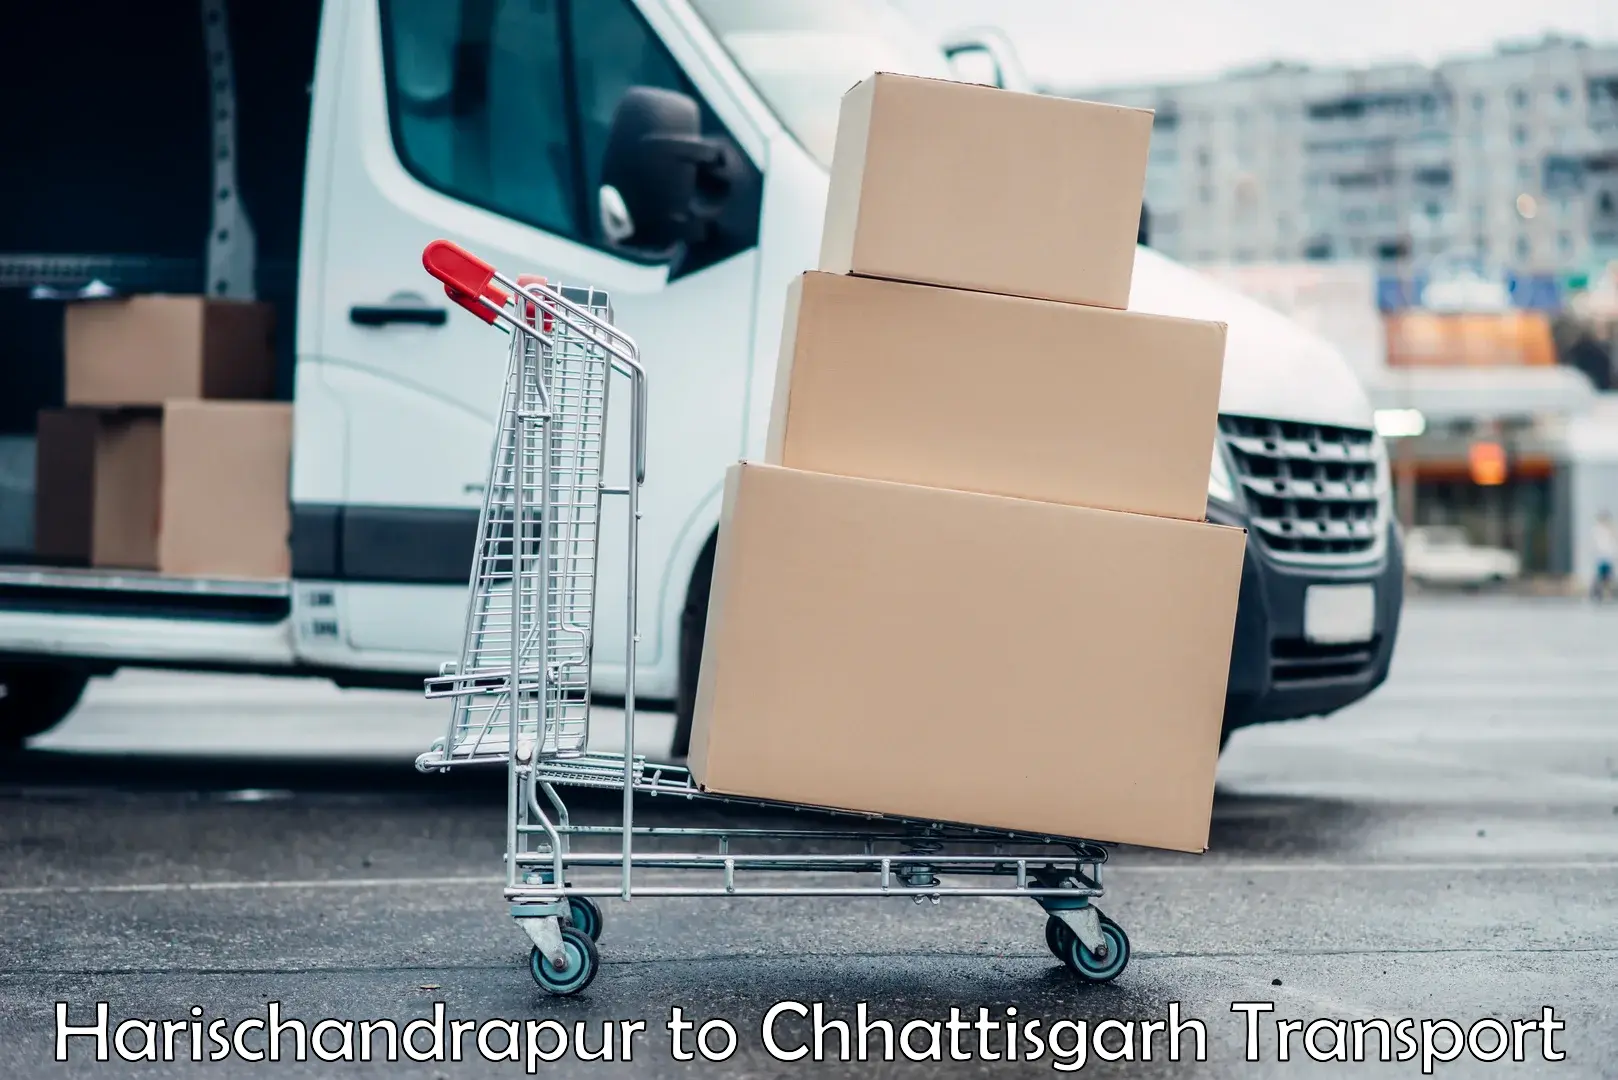 Container transport service Harischandrapur to Raigarh Chhattisgarh